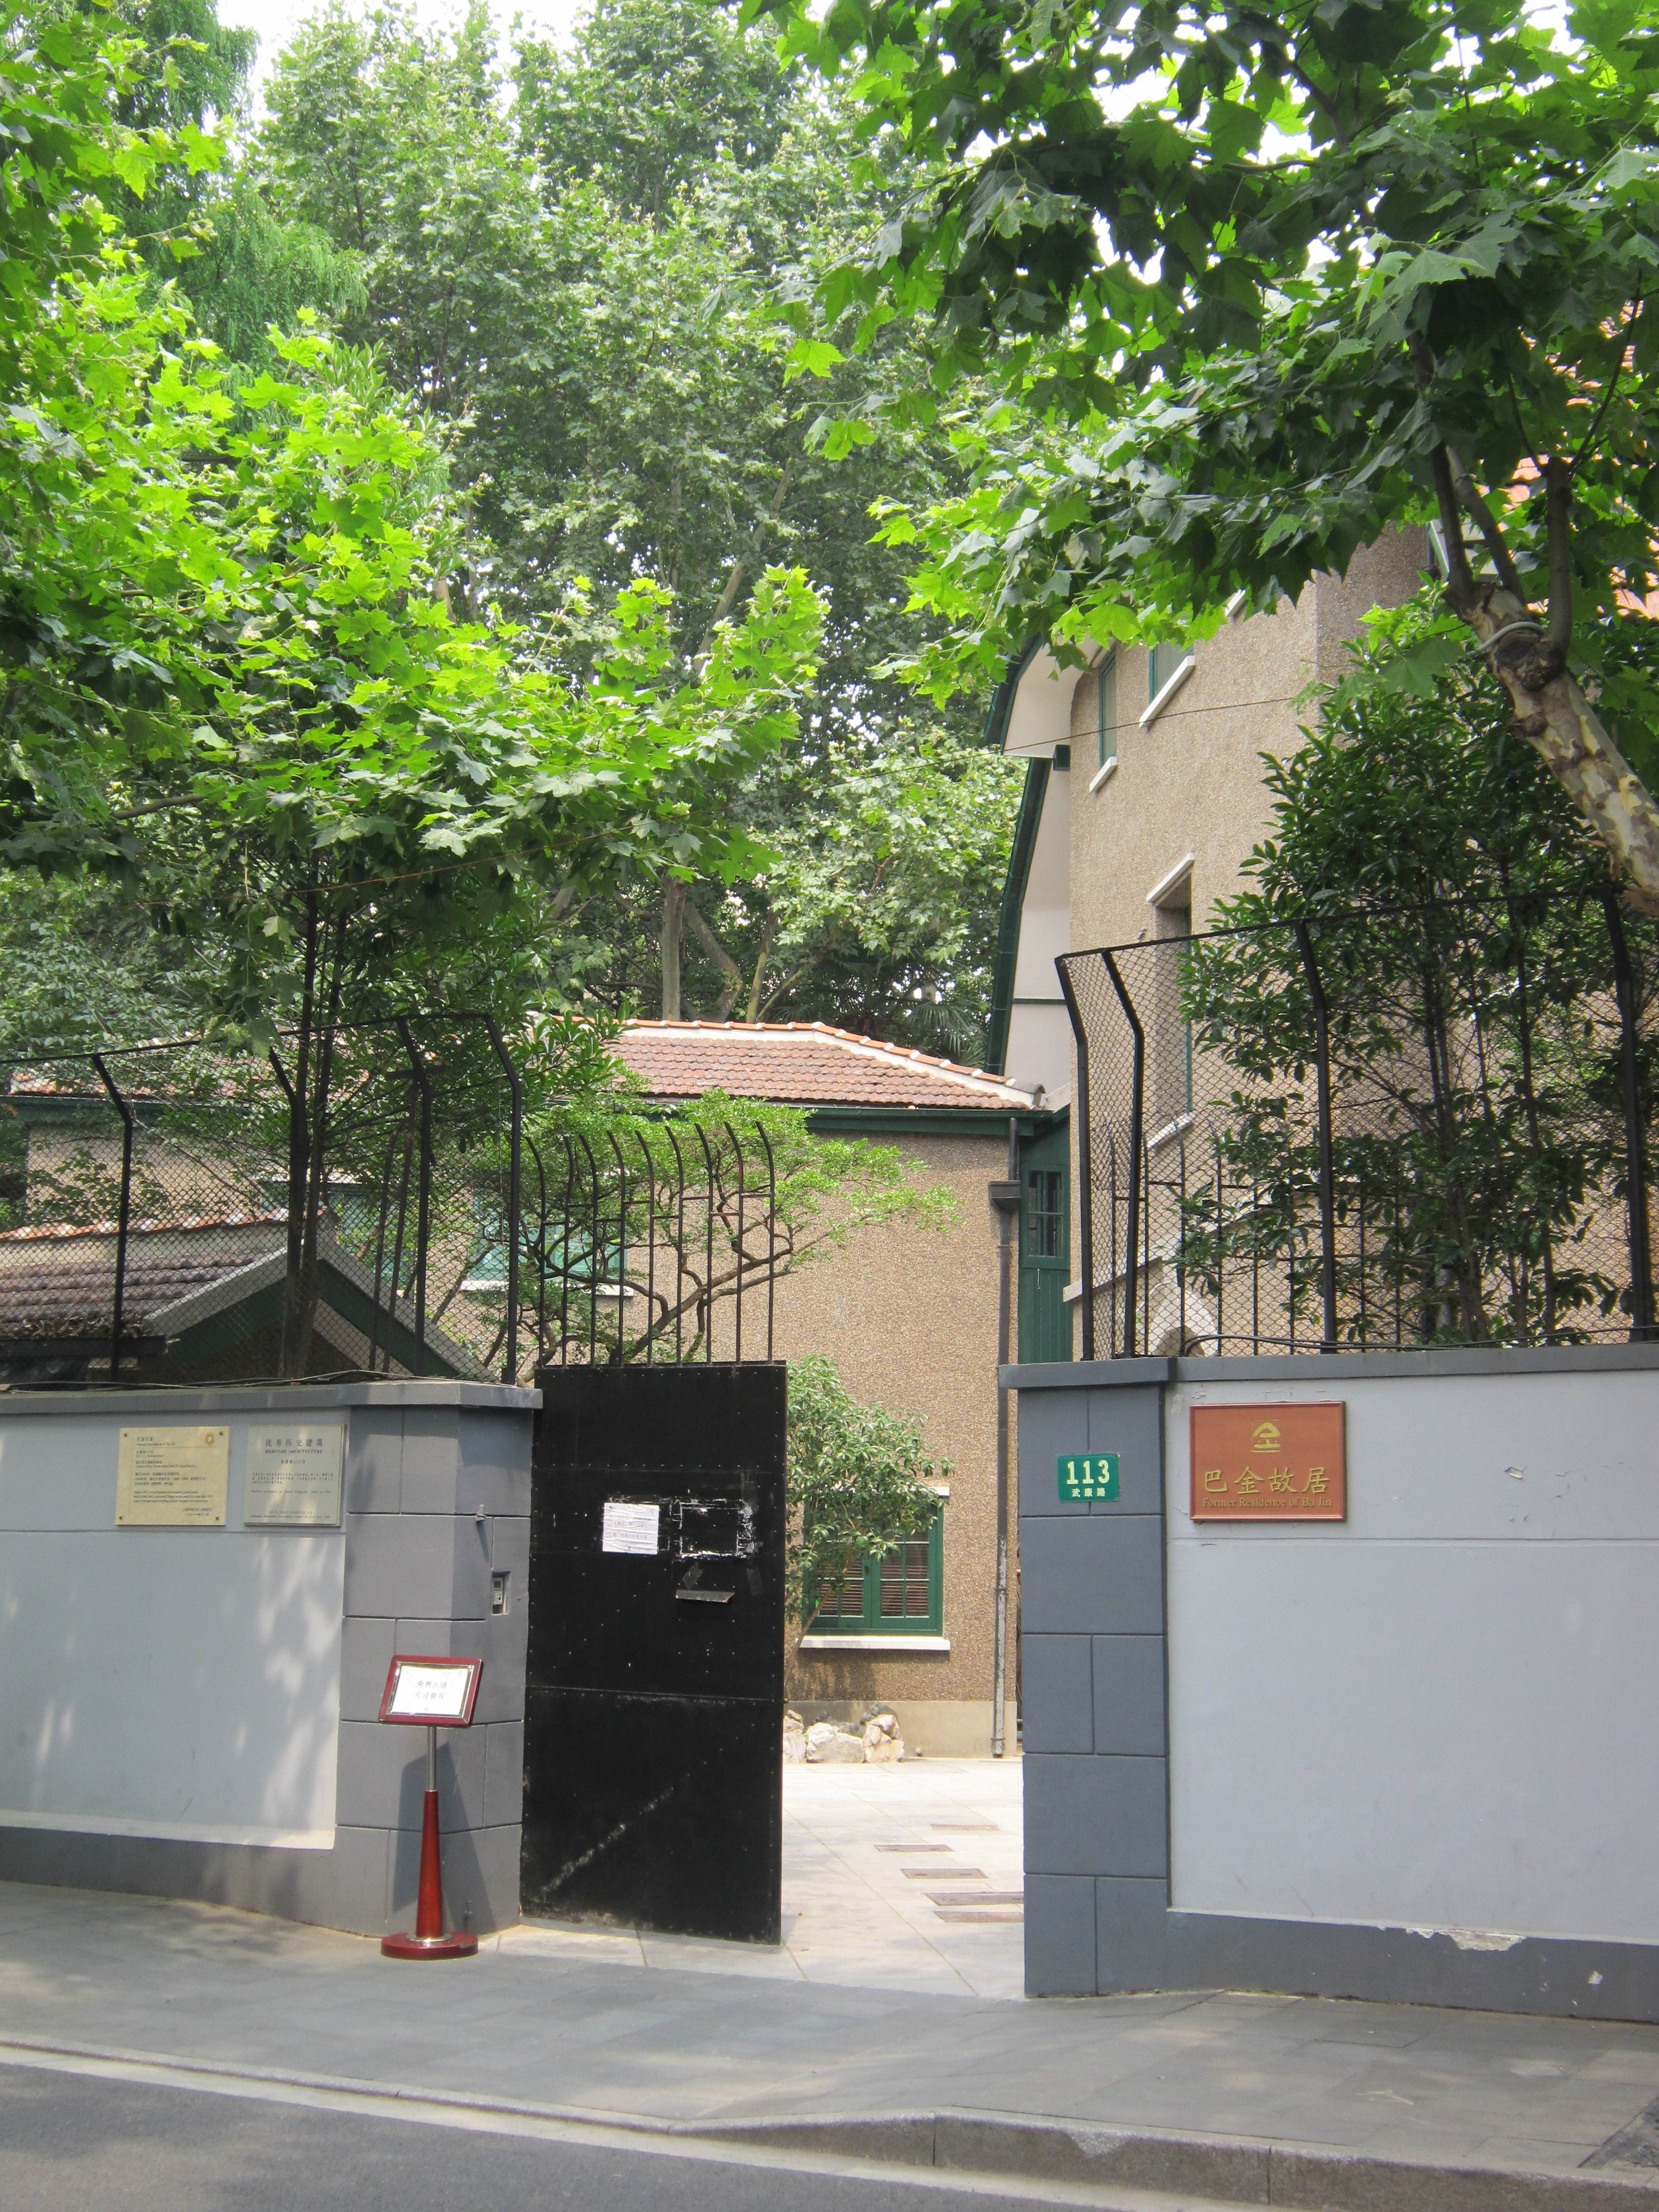 上海巴金故居纪念馆图片